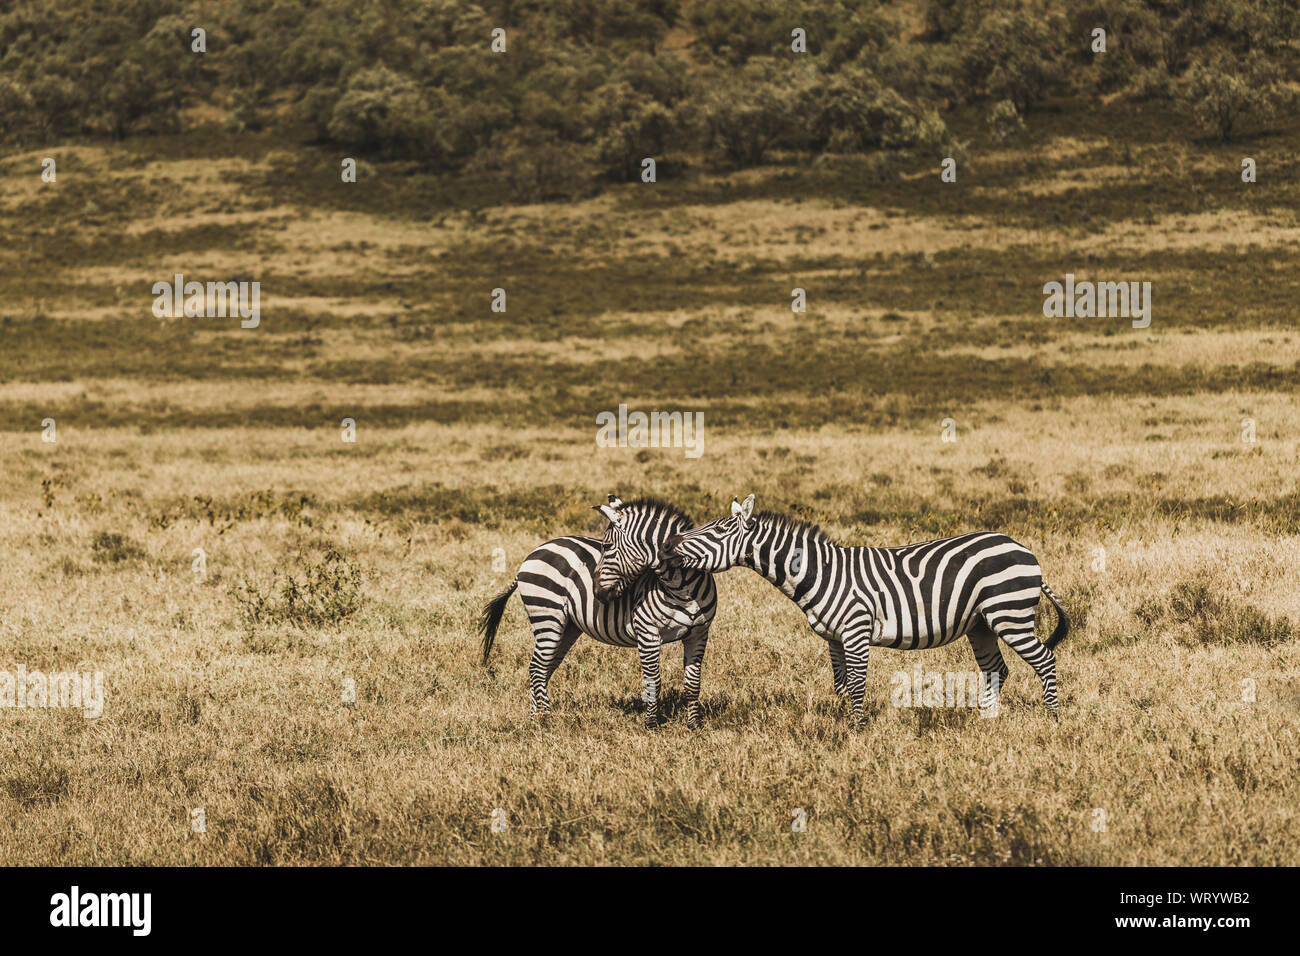 Couple de zèbres dans les savanes sur safari au Kenya parc national. L'harmonie dans la nature. L'amour des animaux sauvages. Banque D'Images